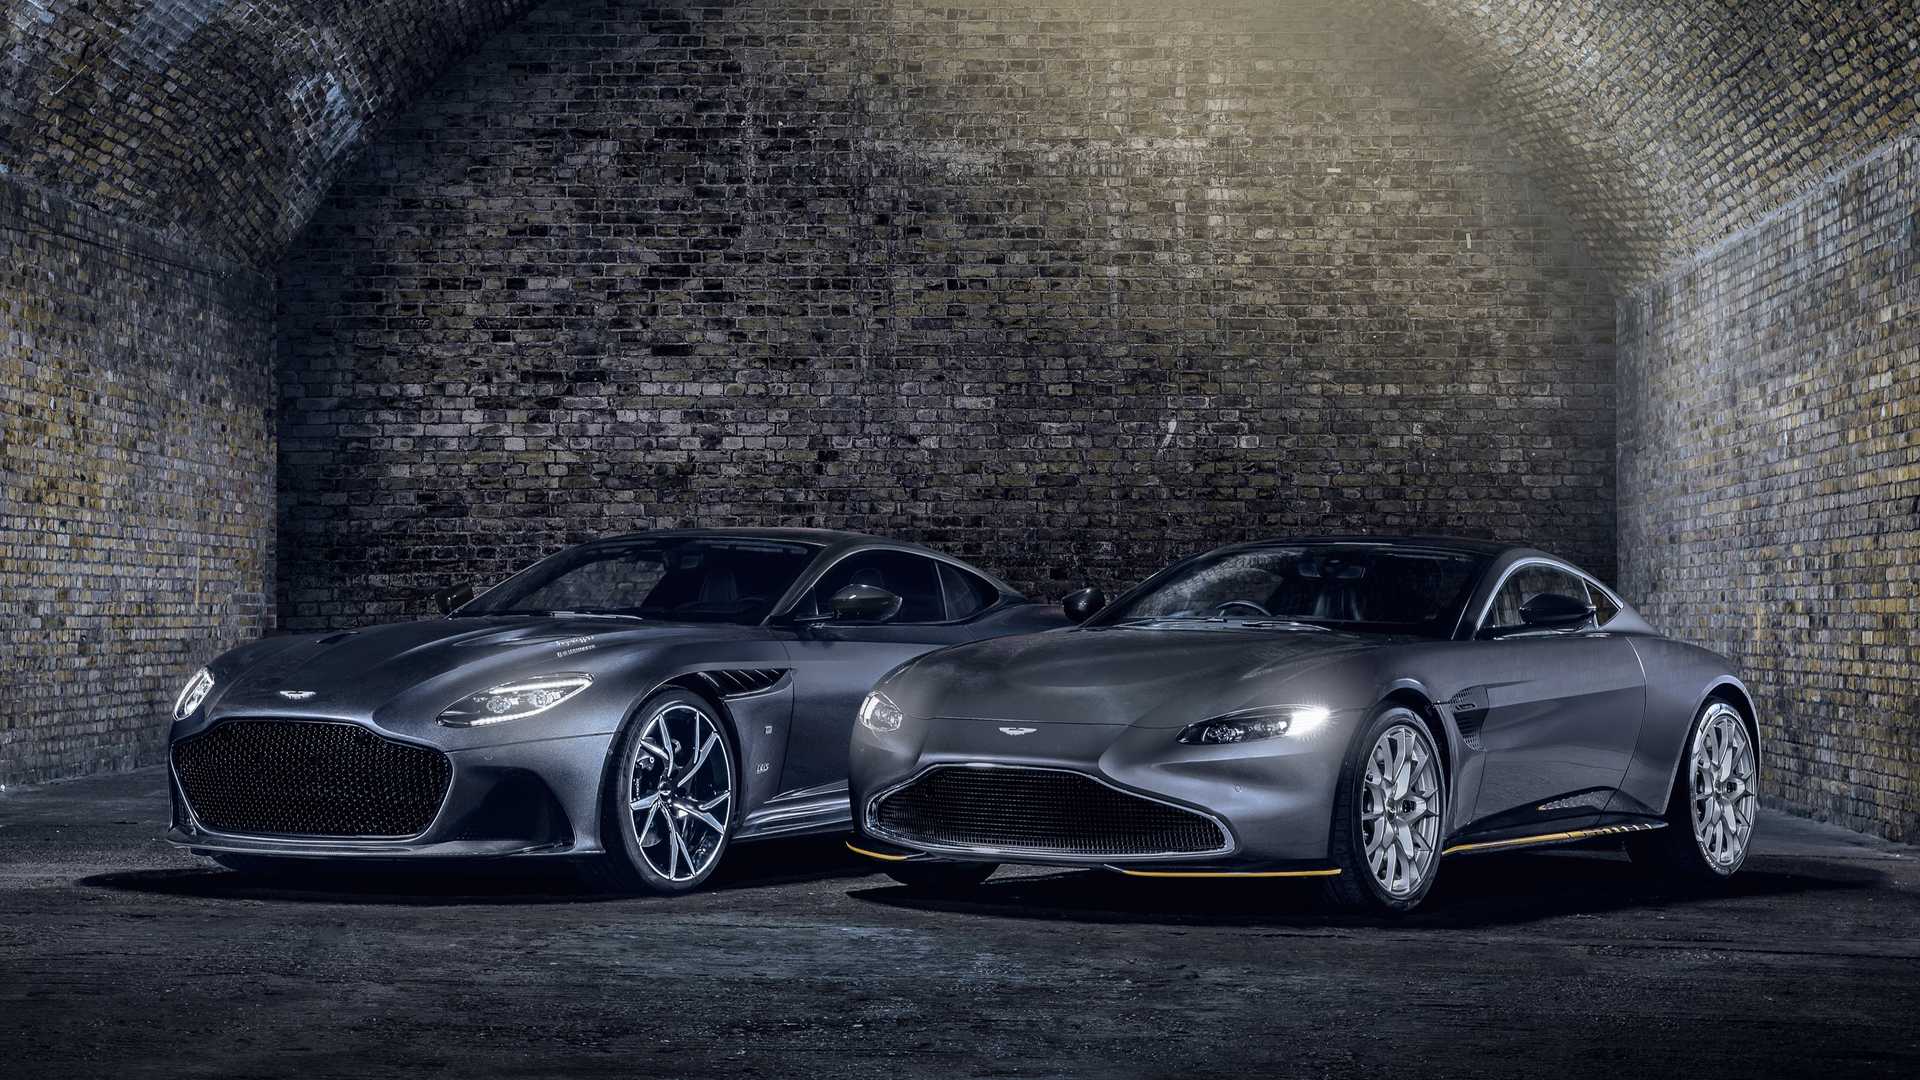 Aston Martin Vantage 007 Edition & DBS Superleggera  Due modelli esclusivi per sentirsi come Bond